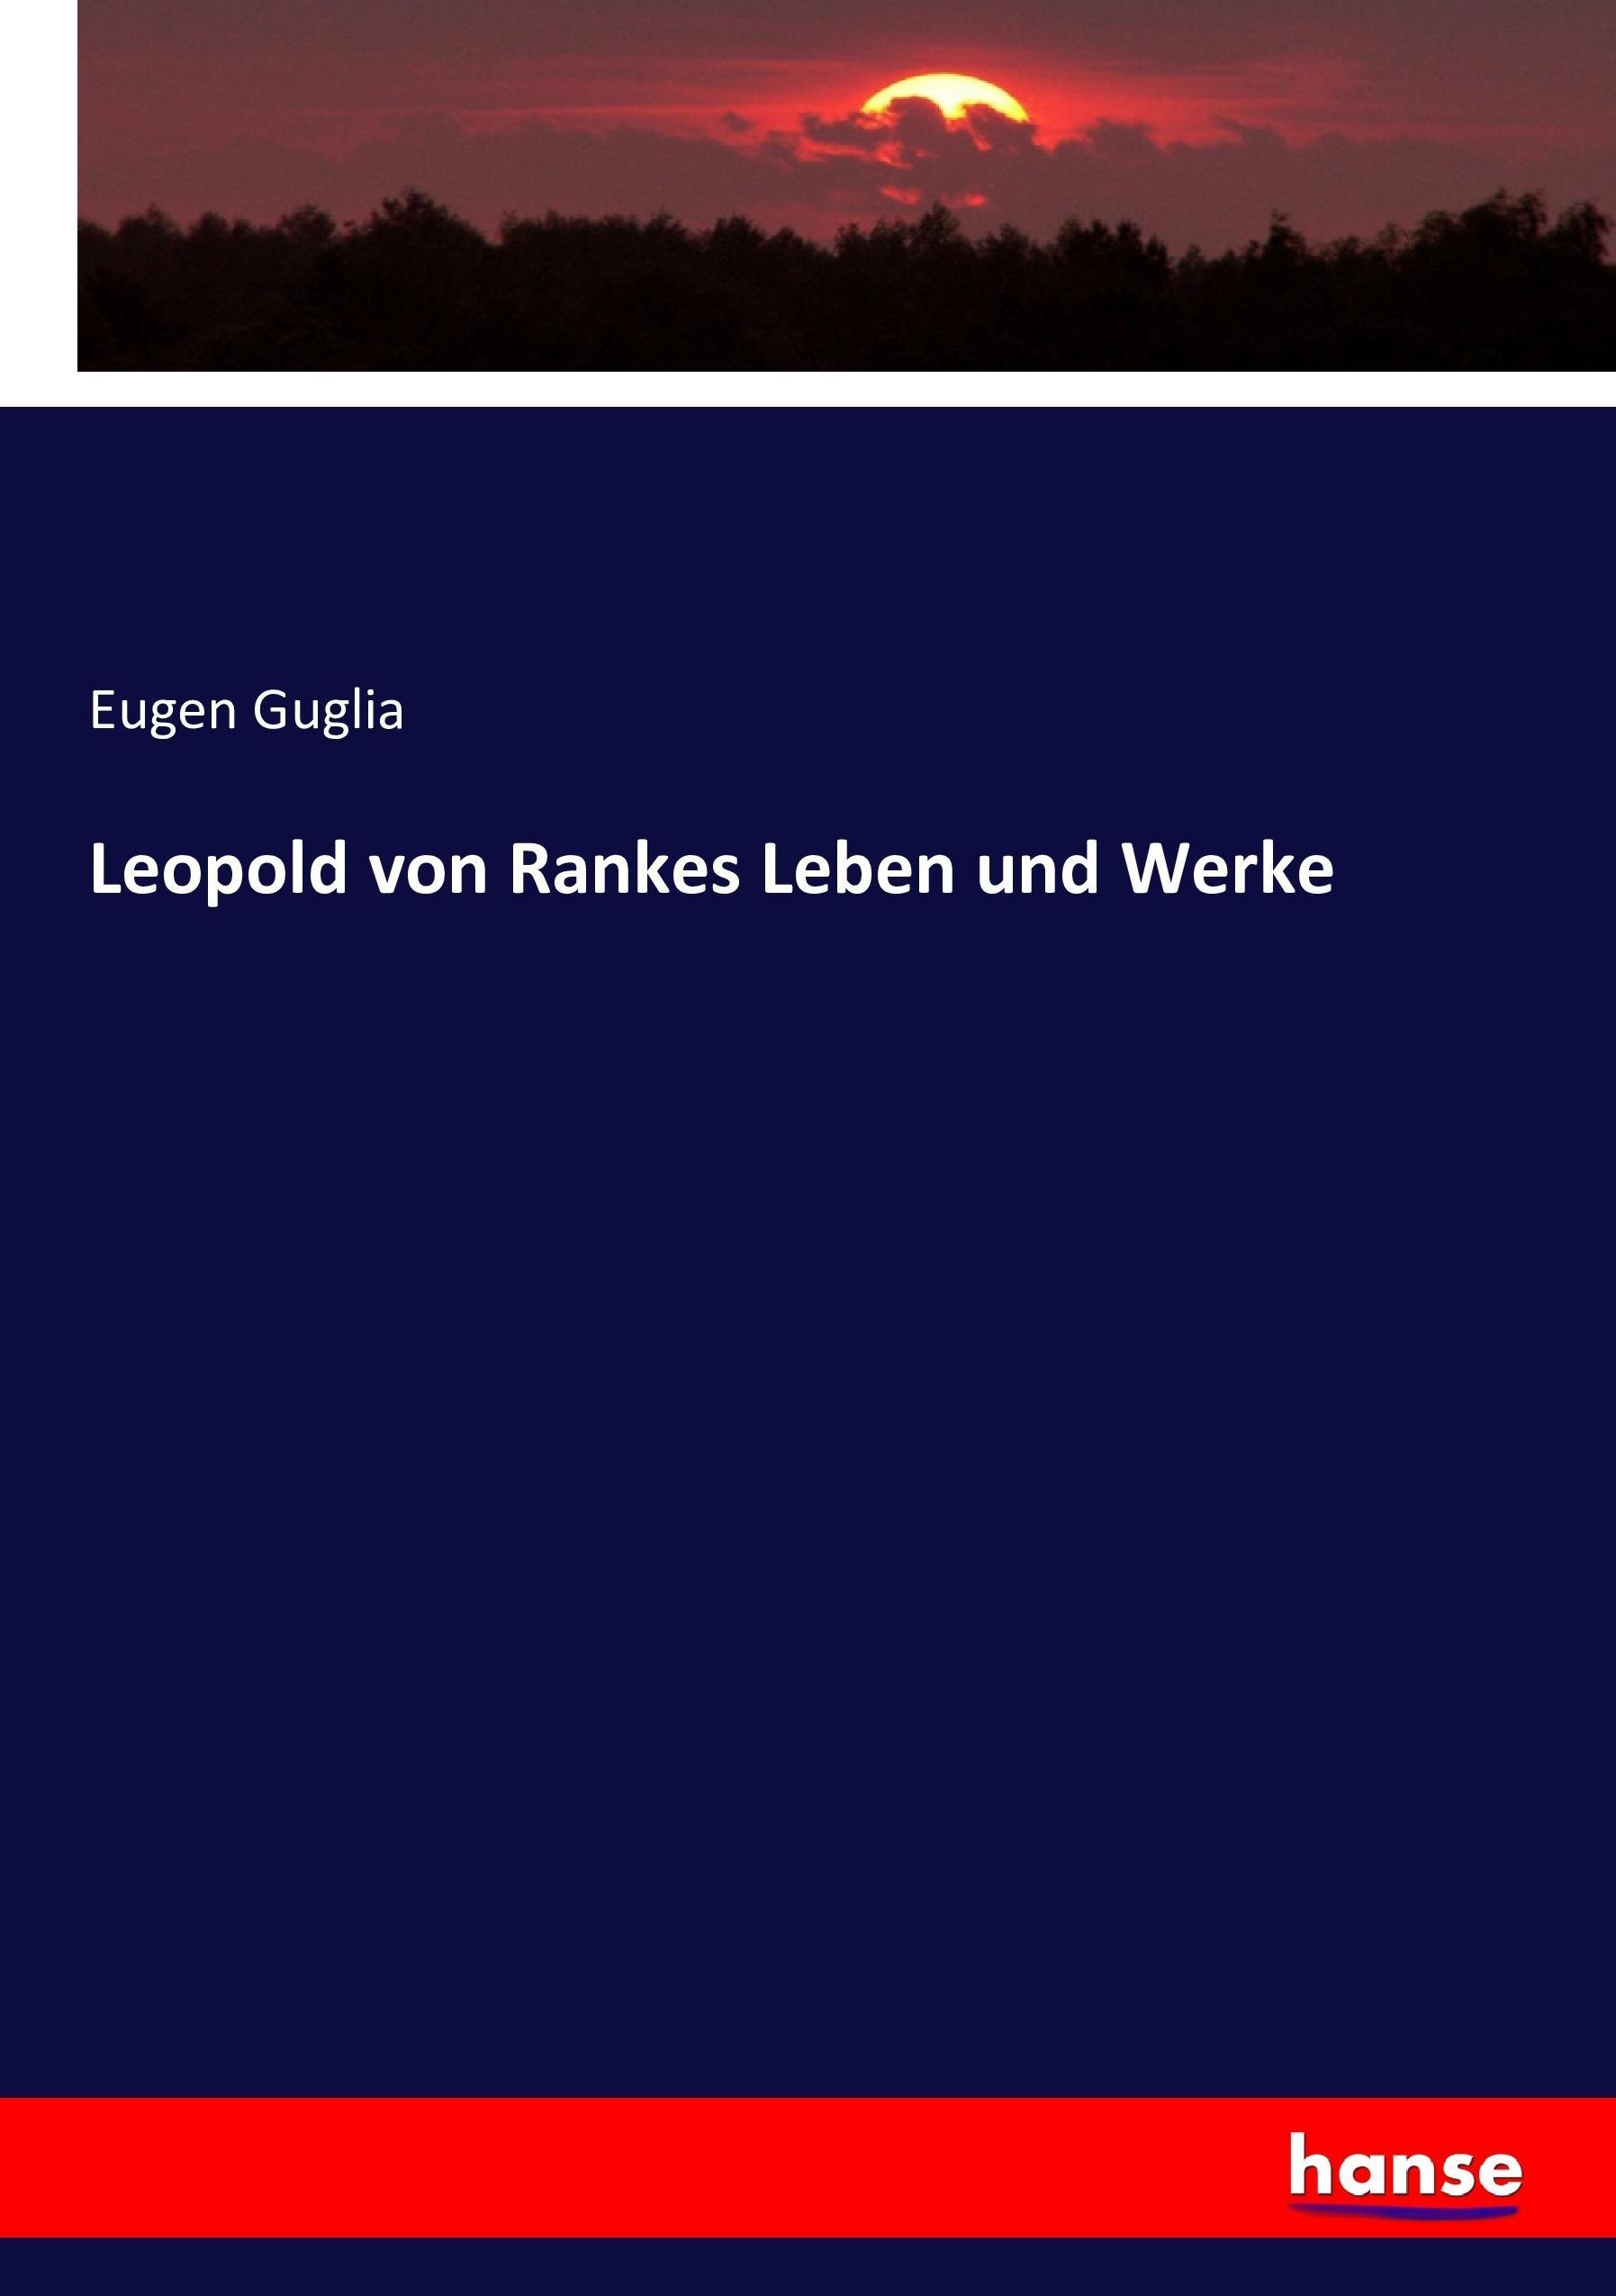 Leopold von Rankes Leben und Werke - Guglia, Eugen